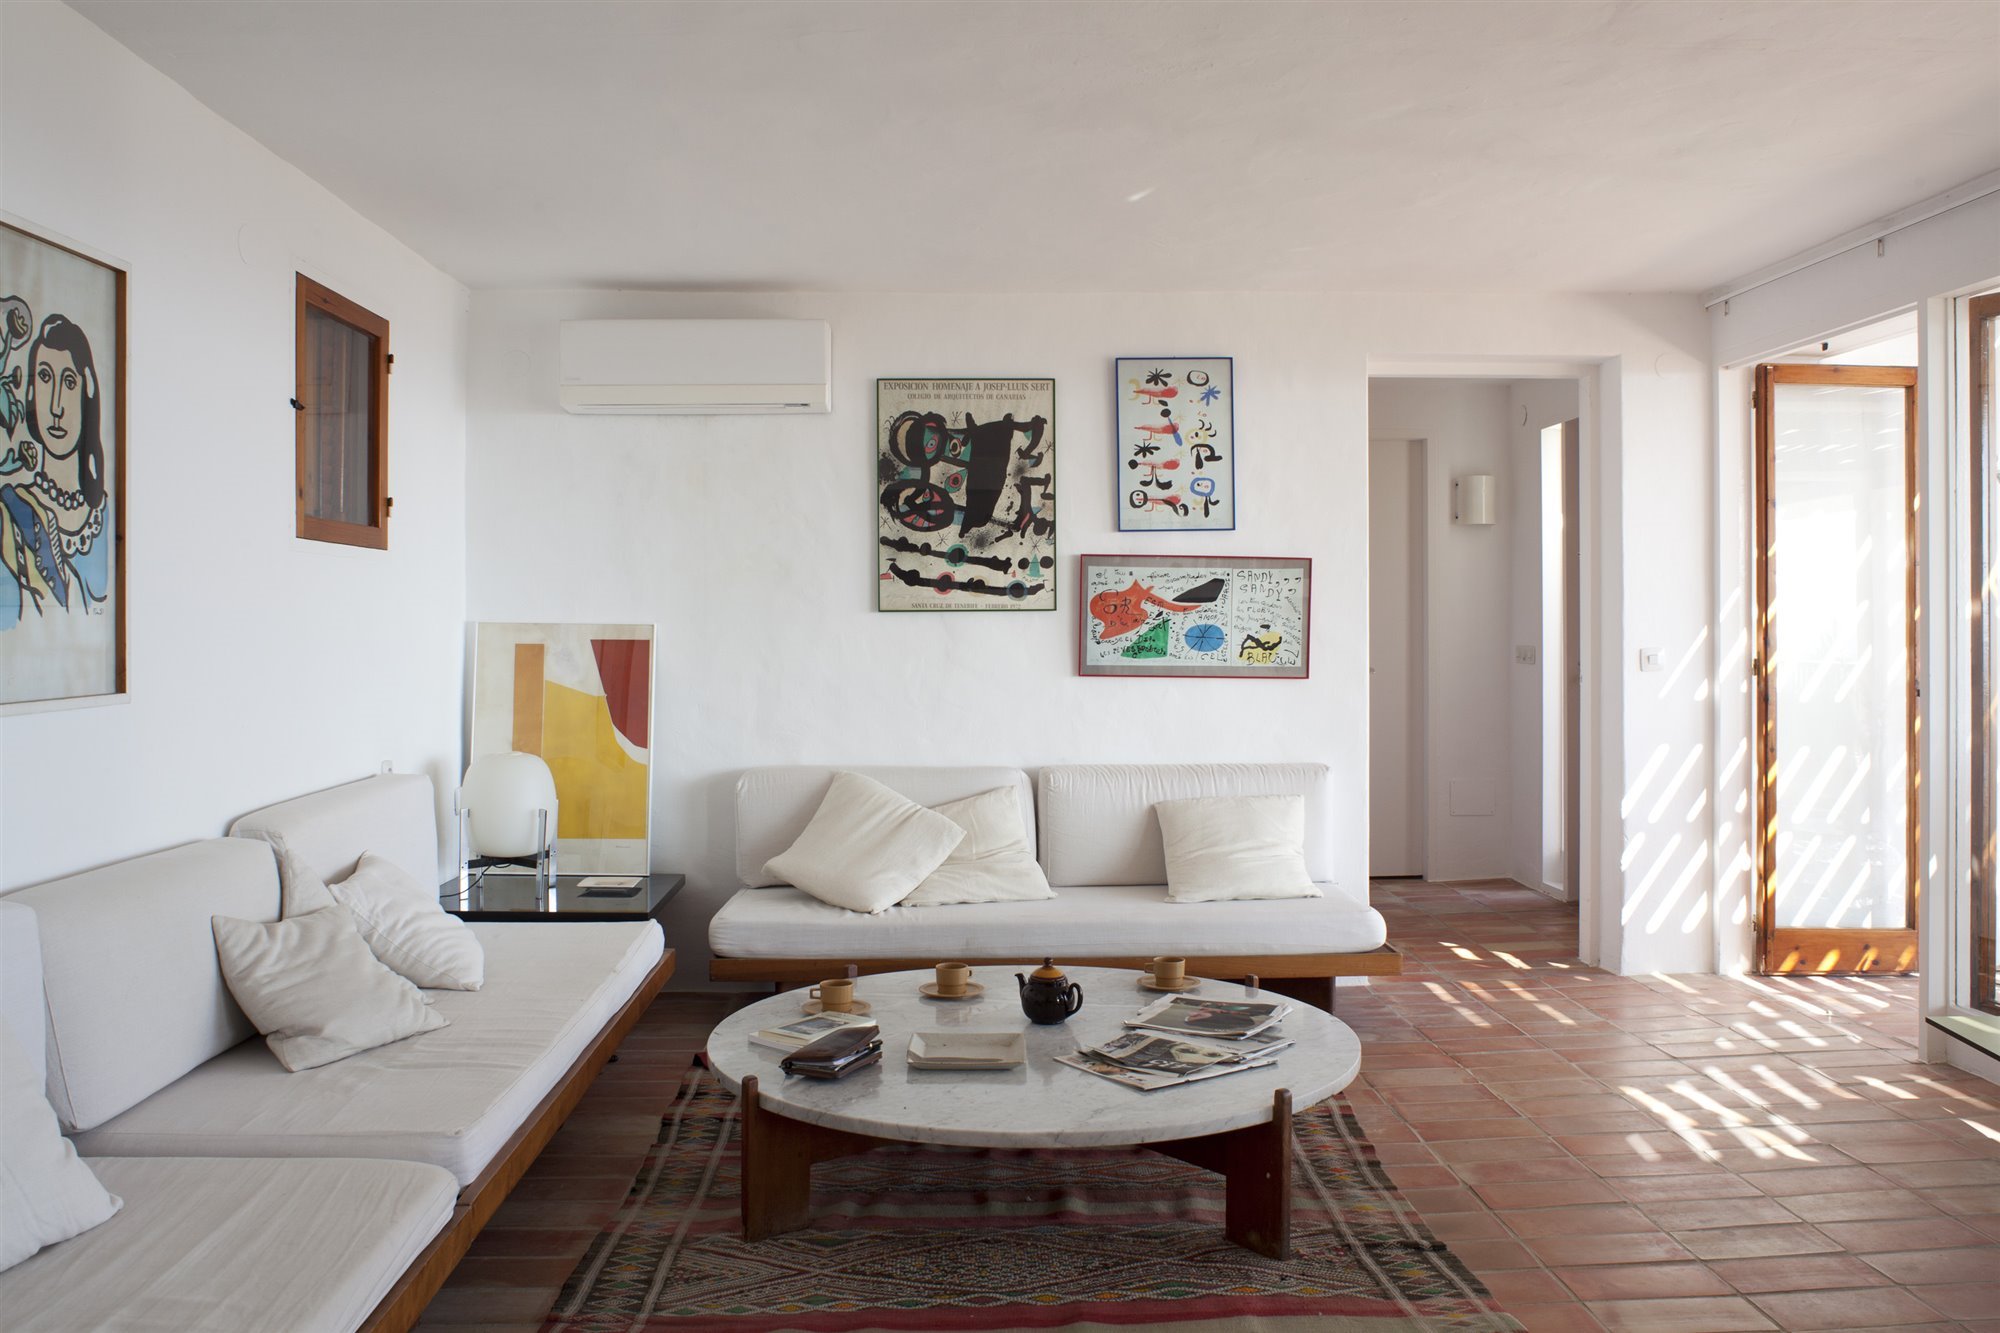 Casa diseñada por Josep Lluis Sert en Ibiza salon con sofas blancos de obra